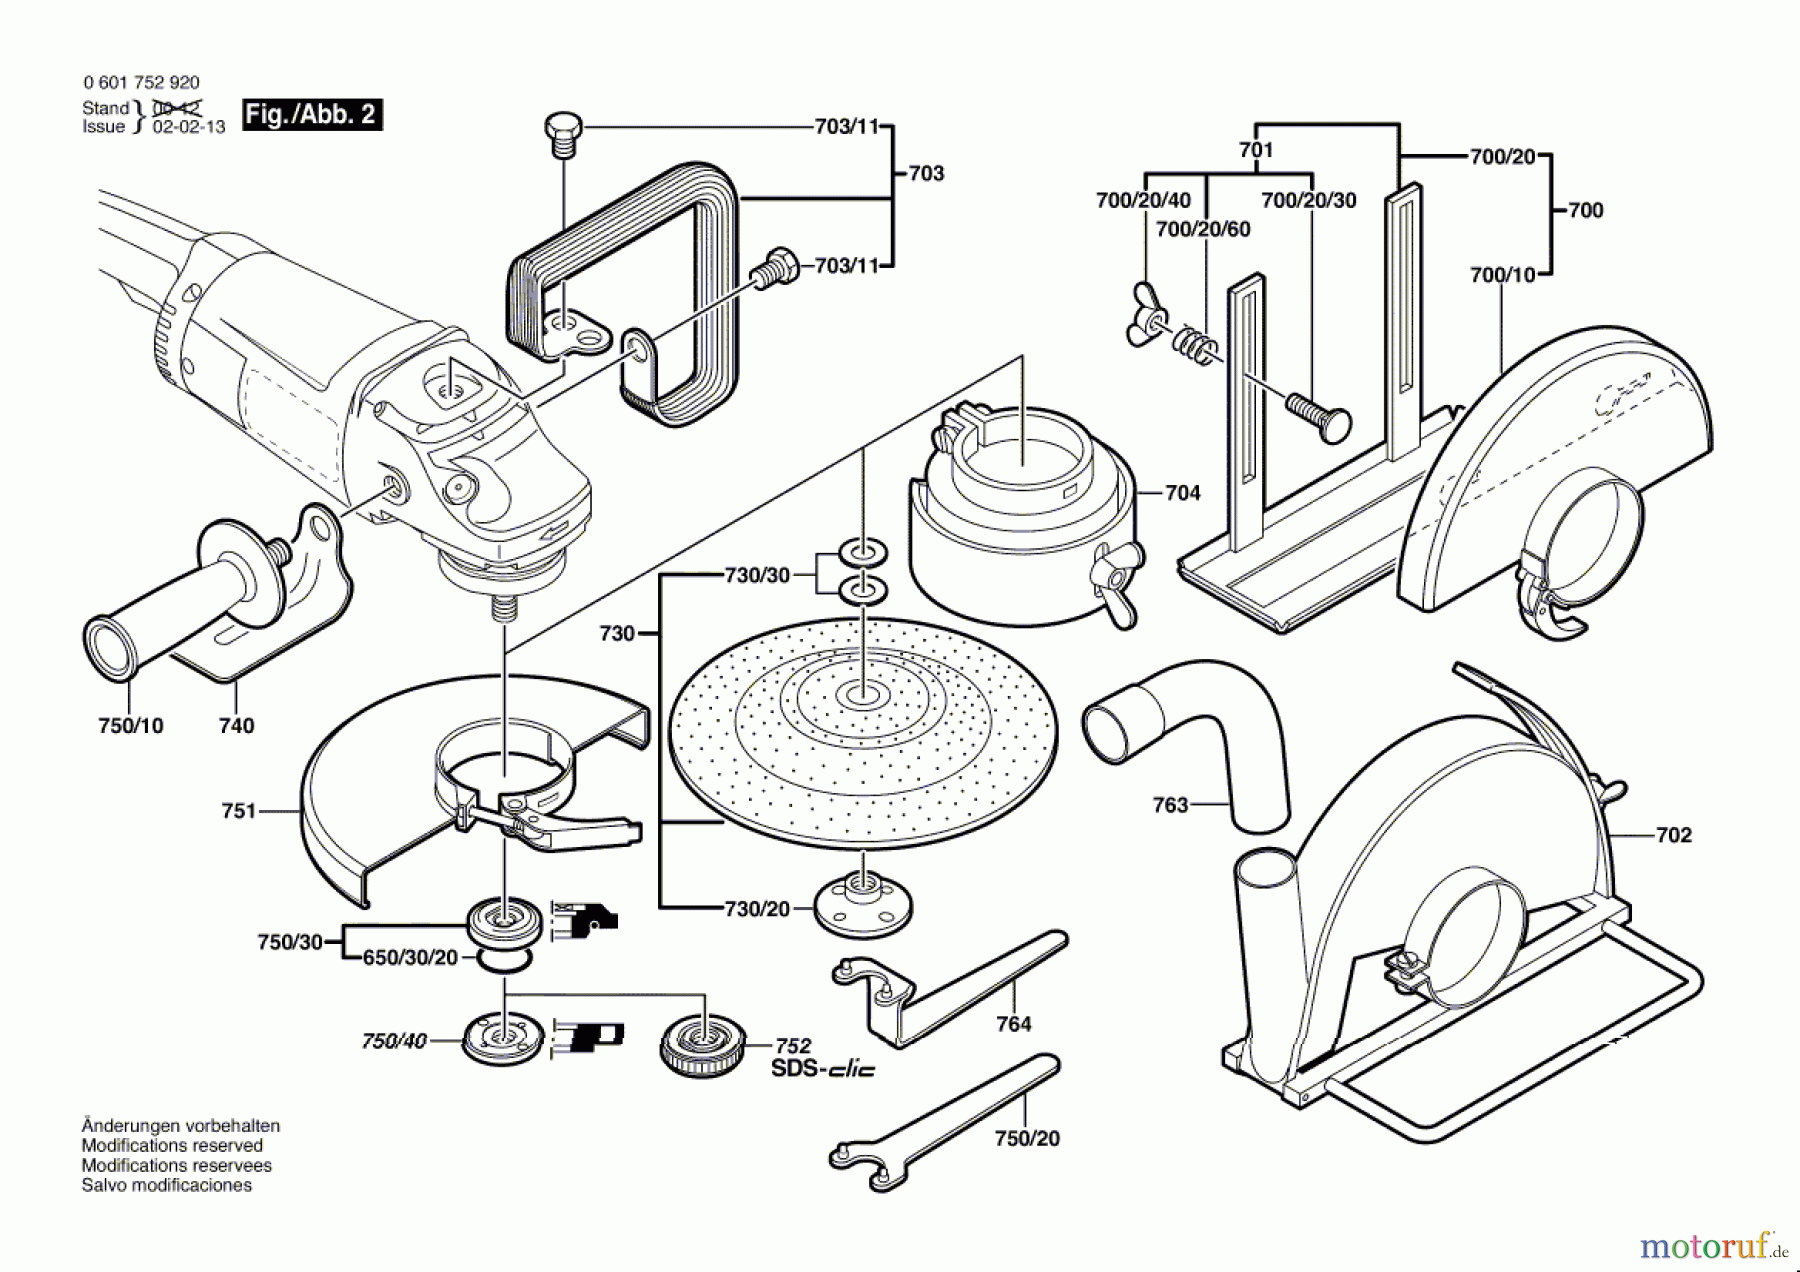  Bosch Werkzeug Winkelschleifer GWS 230 J Seite 2